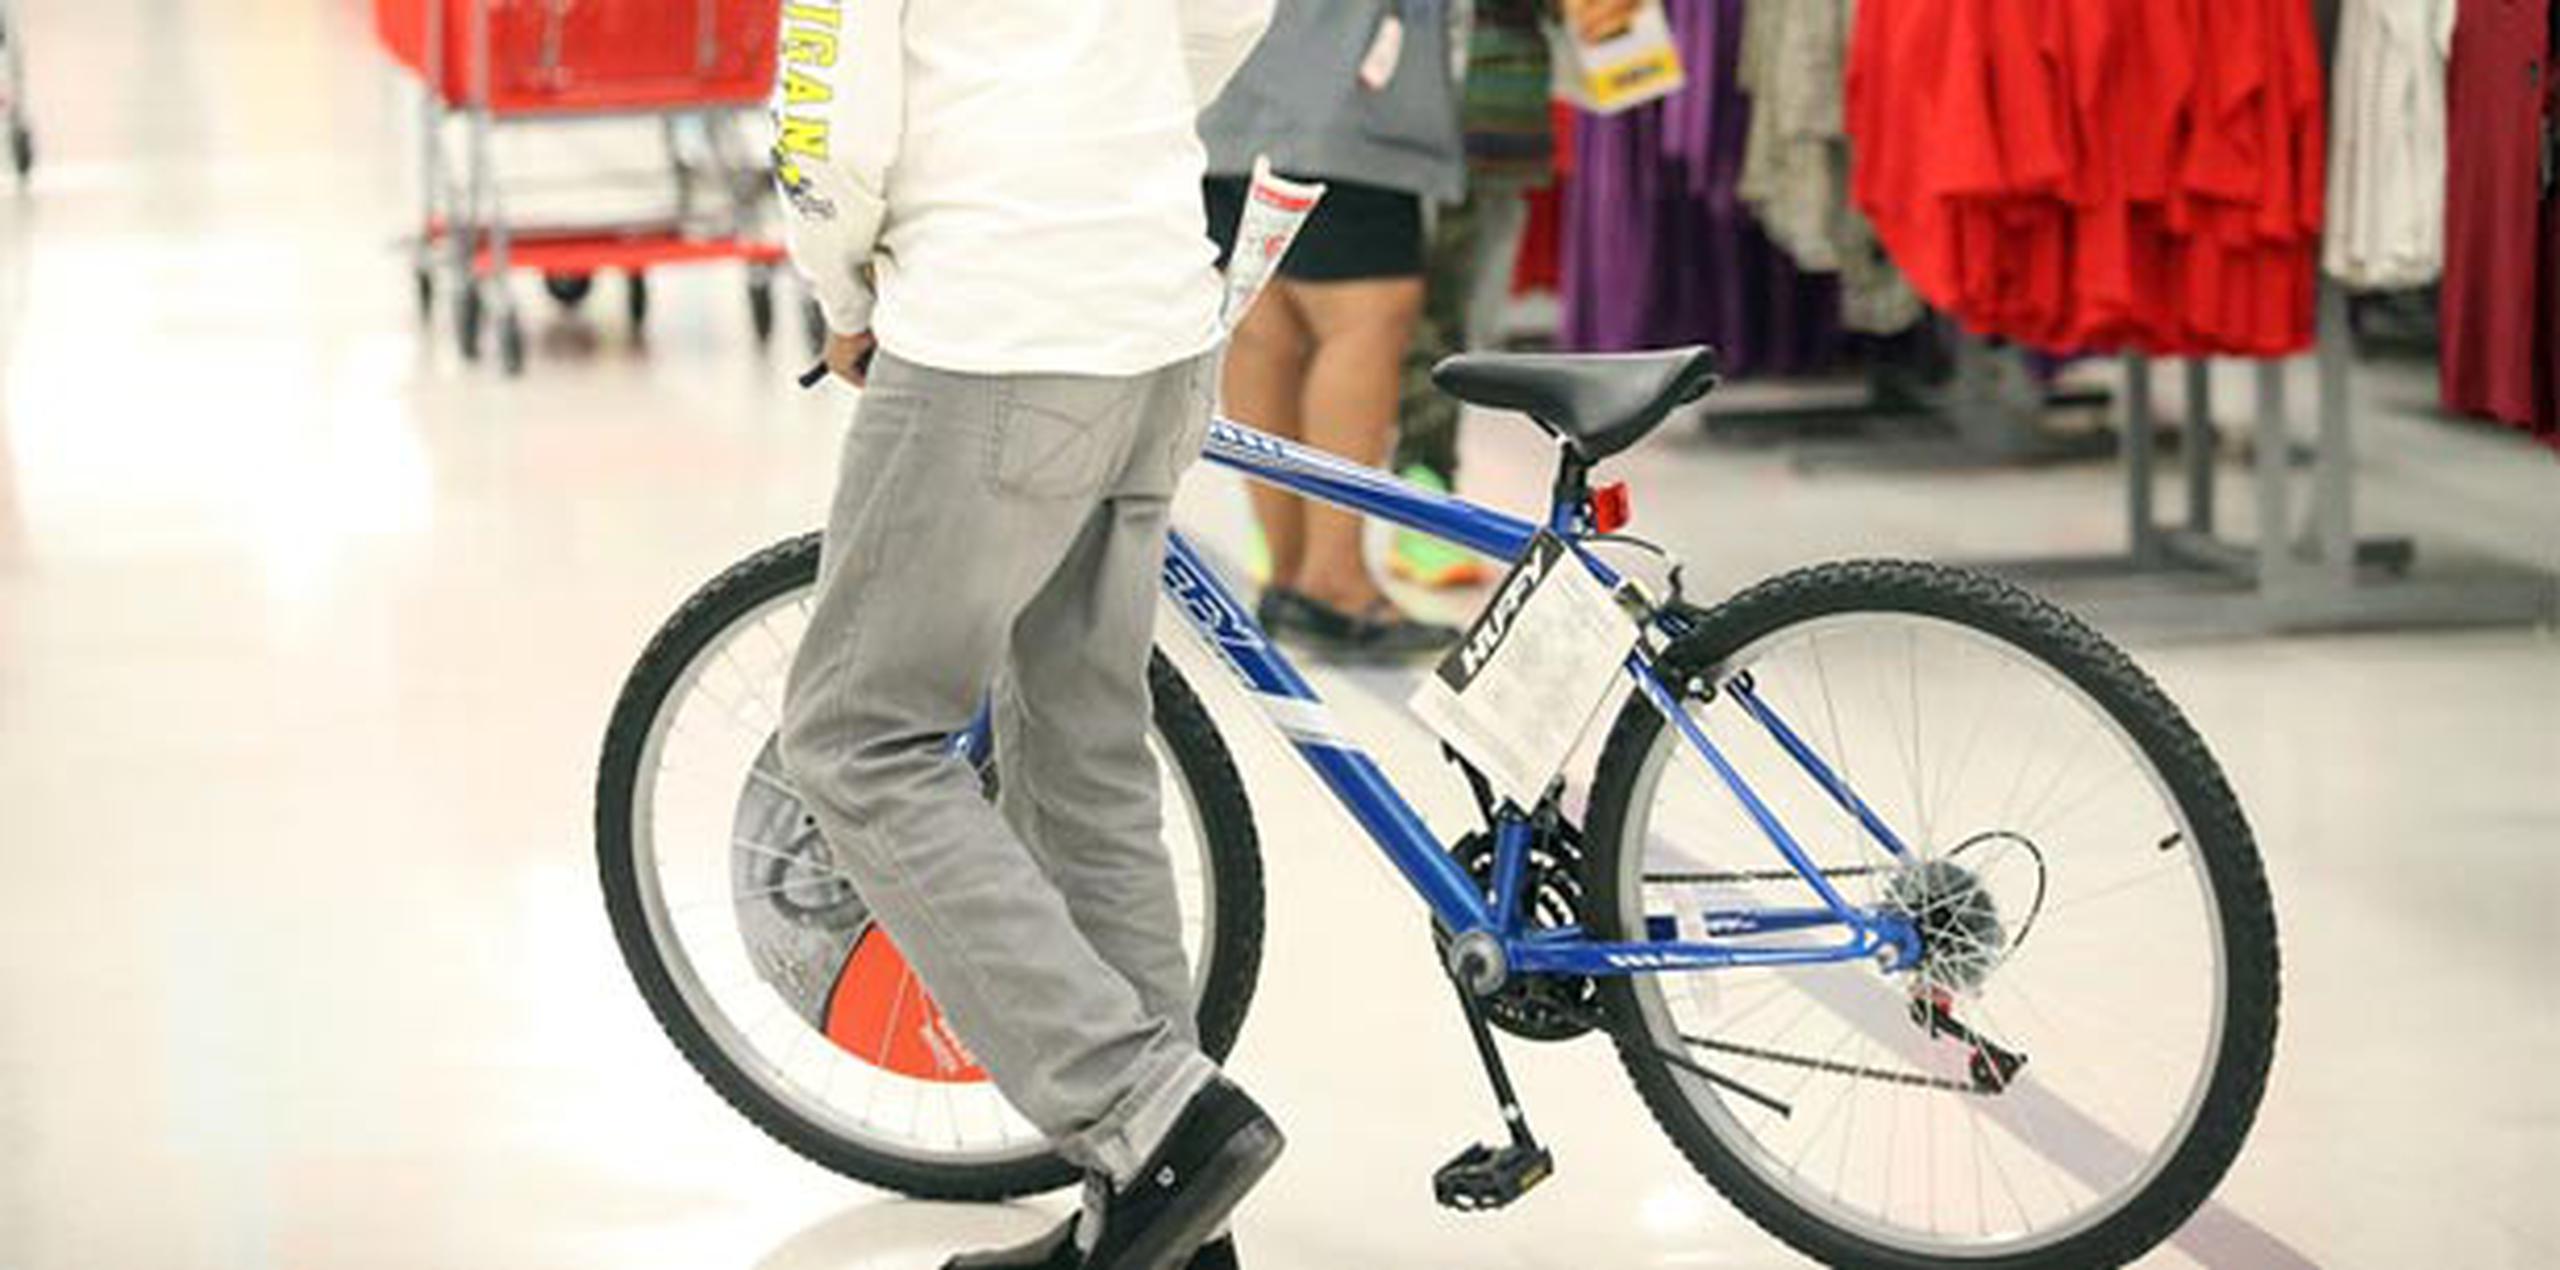 Es bien probable que encuentre bicicletas a menor precio que en verano ya que con el descenso de las temperaturas, muchas personas dejan de salir en ellas. (Archivo)